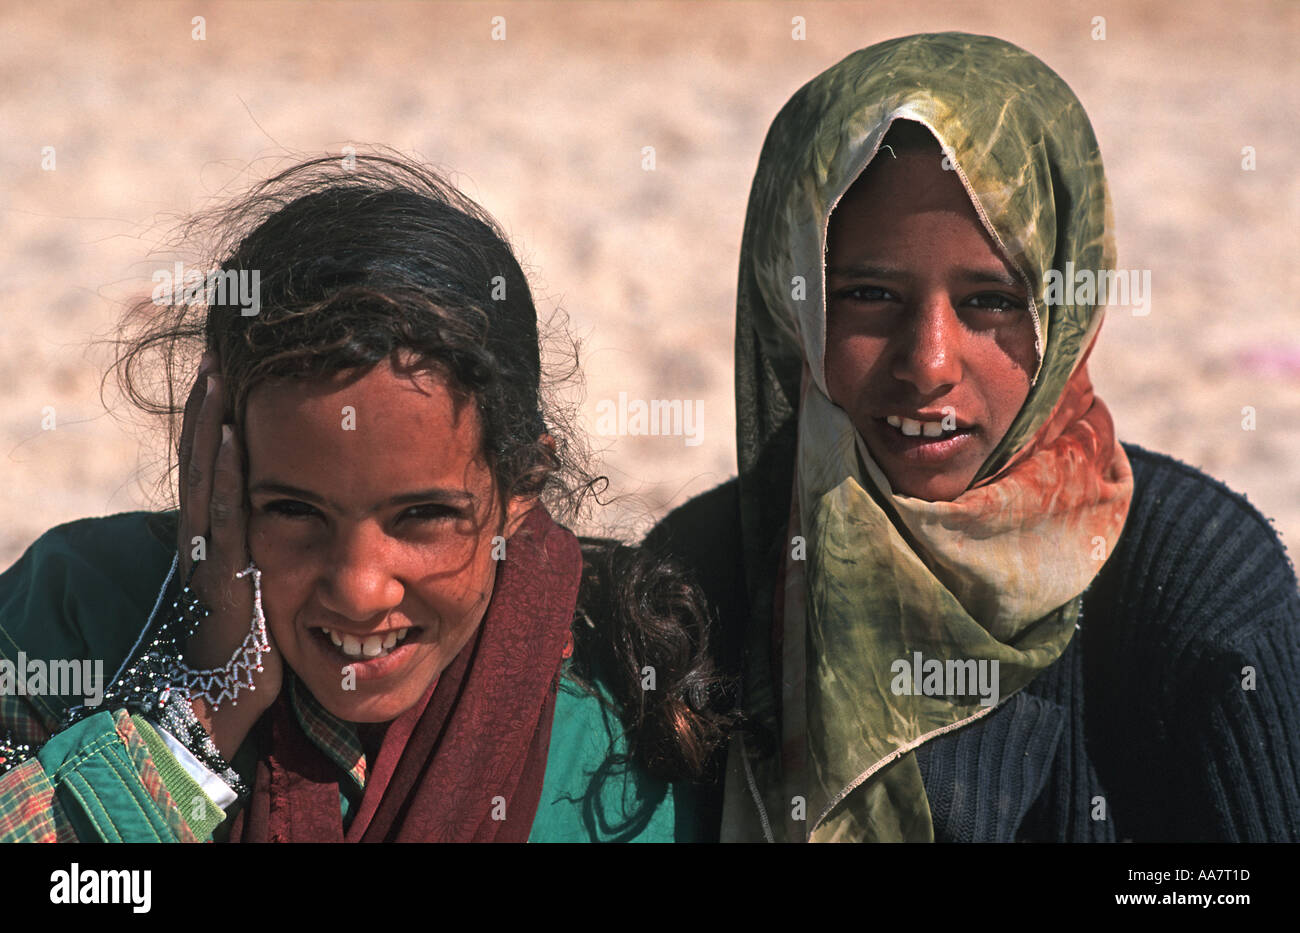 Zwei Beduinen Mädchen eine trägt ein Kopftuch-Sinai Ägypten Nahost  Souvenir-Verkäufer am Strand Stockfotografie - Alamy